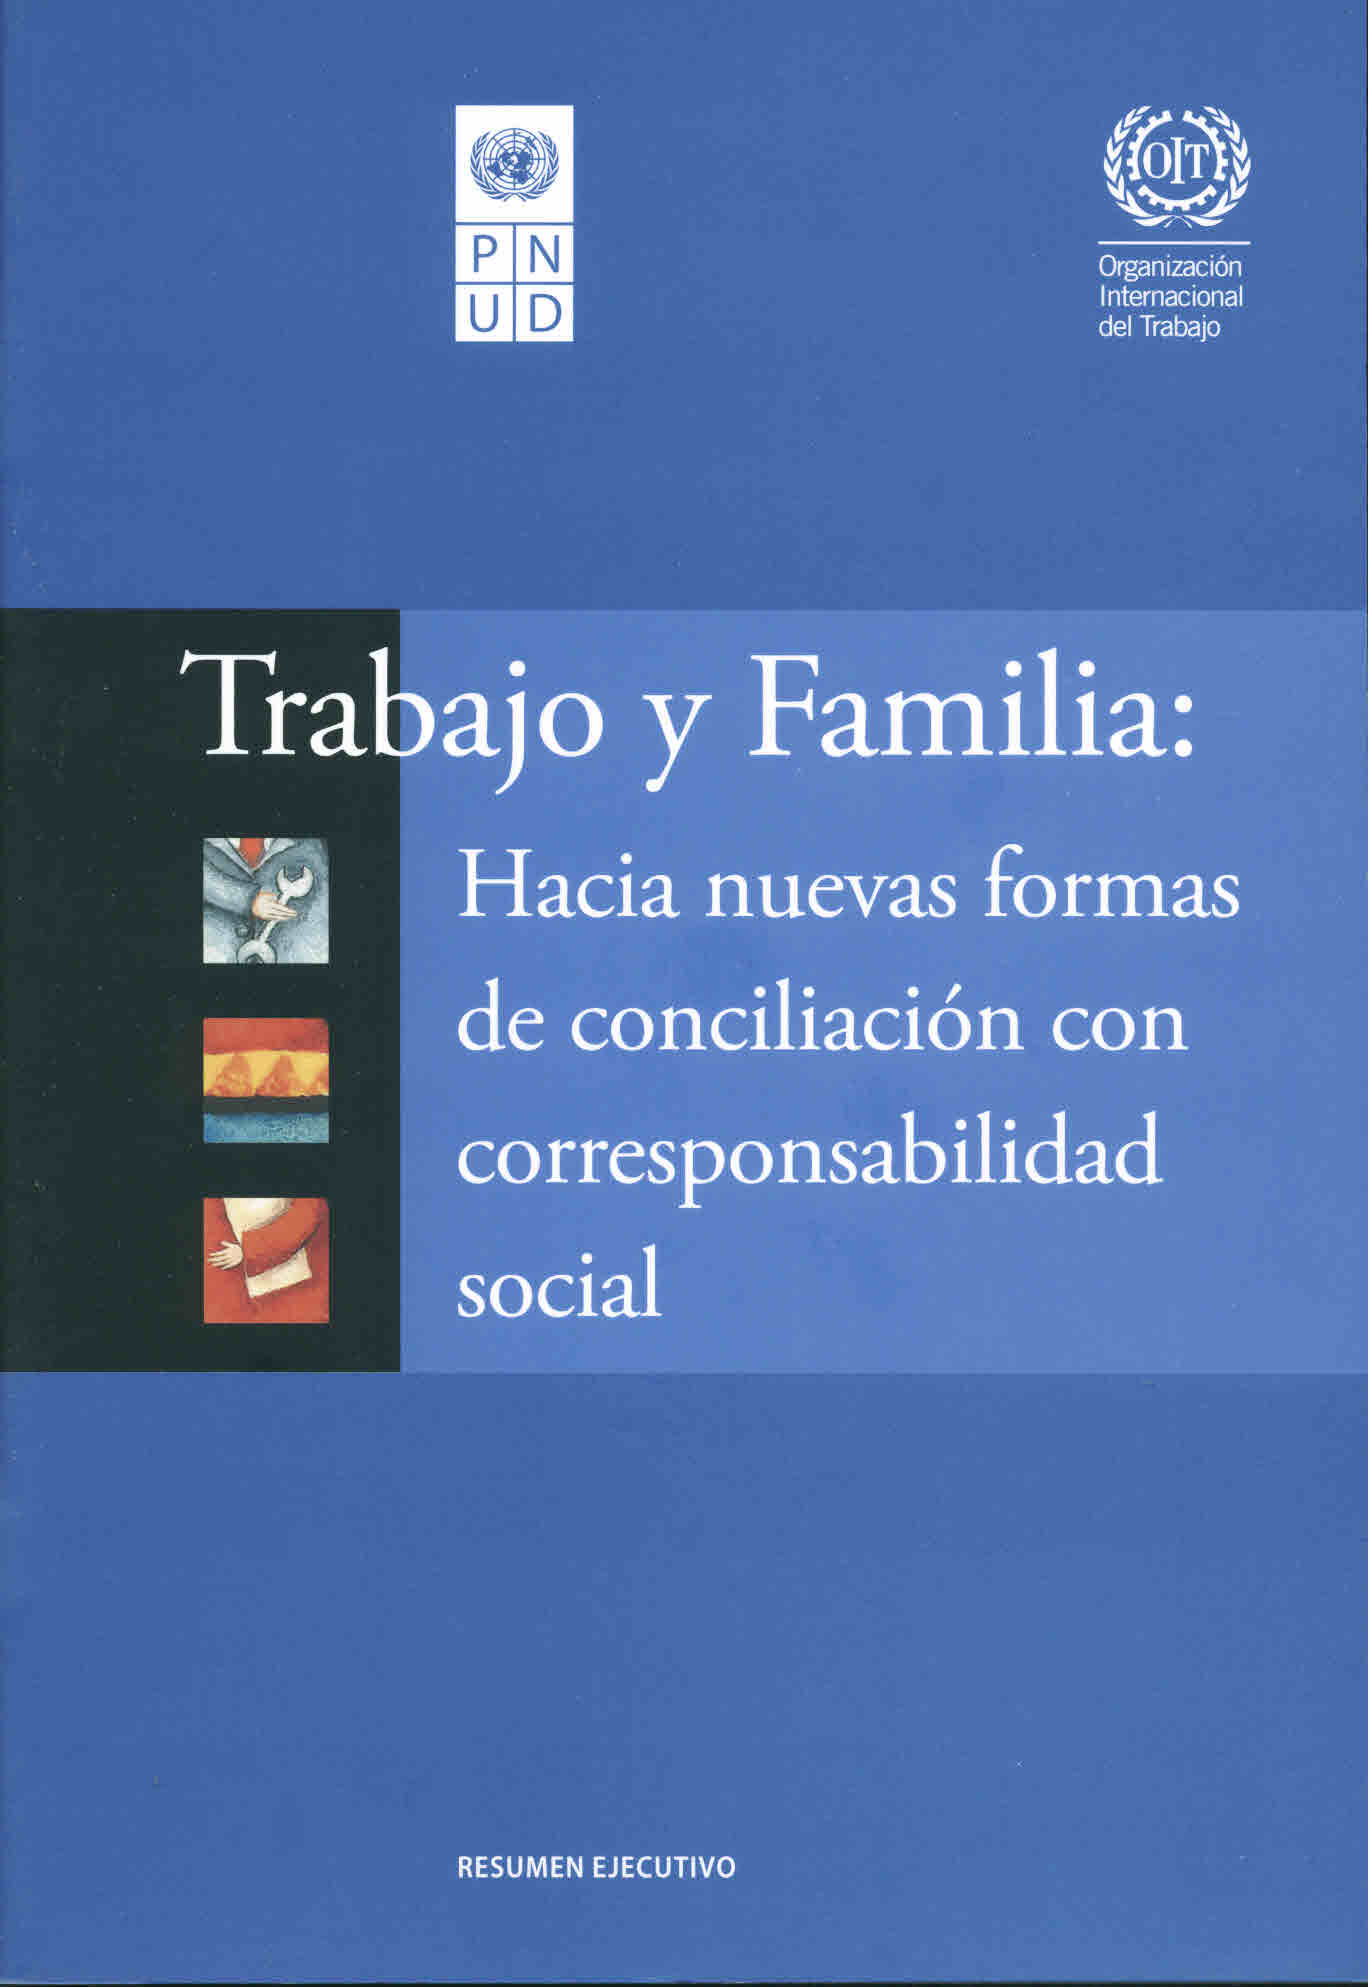 Trabajo y familia: Hacia nuevas formas de conciliación con corresponsabilidad social. Resumen ejecutivo